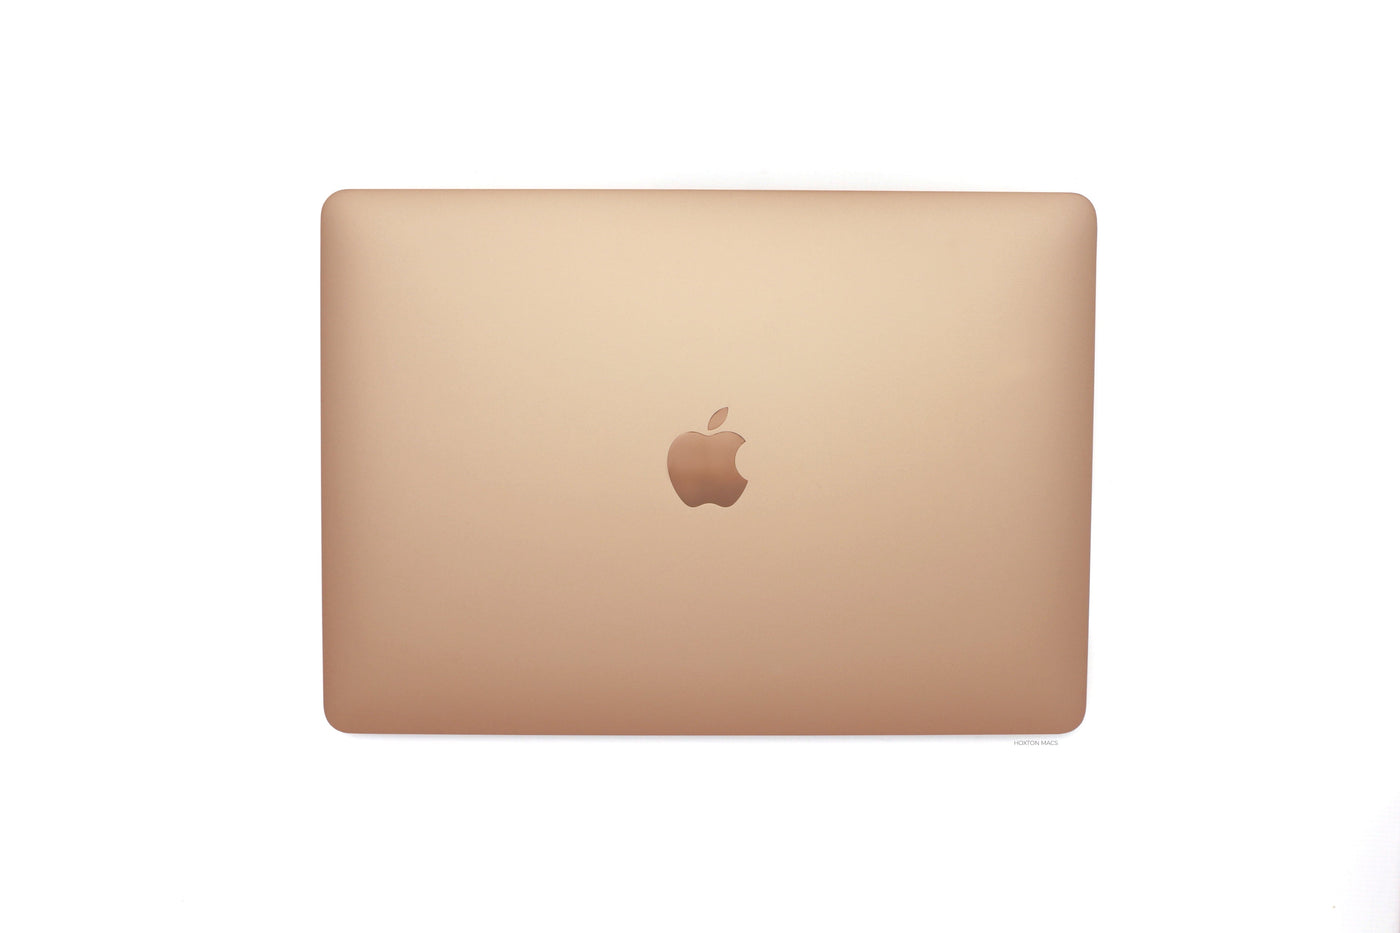 Apple MacBook Air 13-inch MacBook Air 13-inch Core i5 1.1GHz (Gold, 2020) - Fair